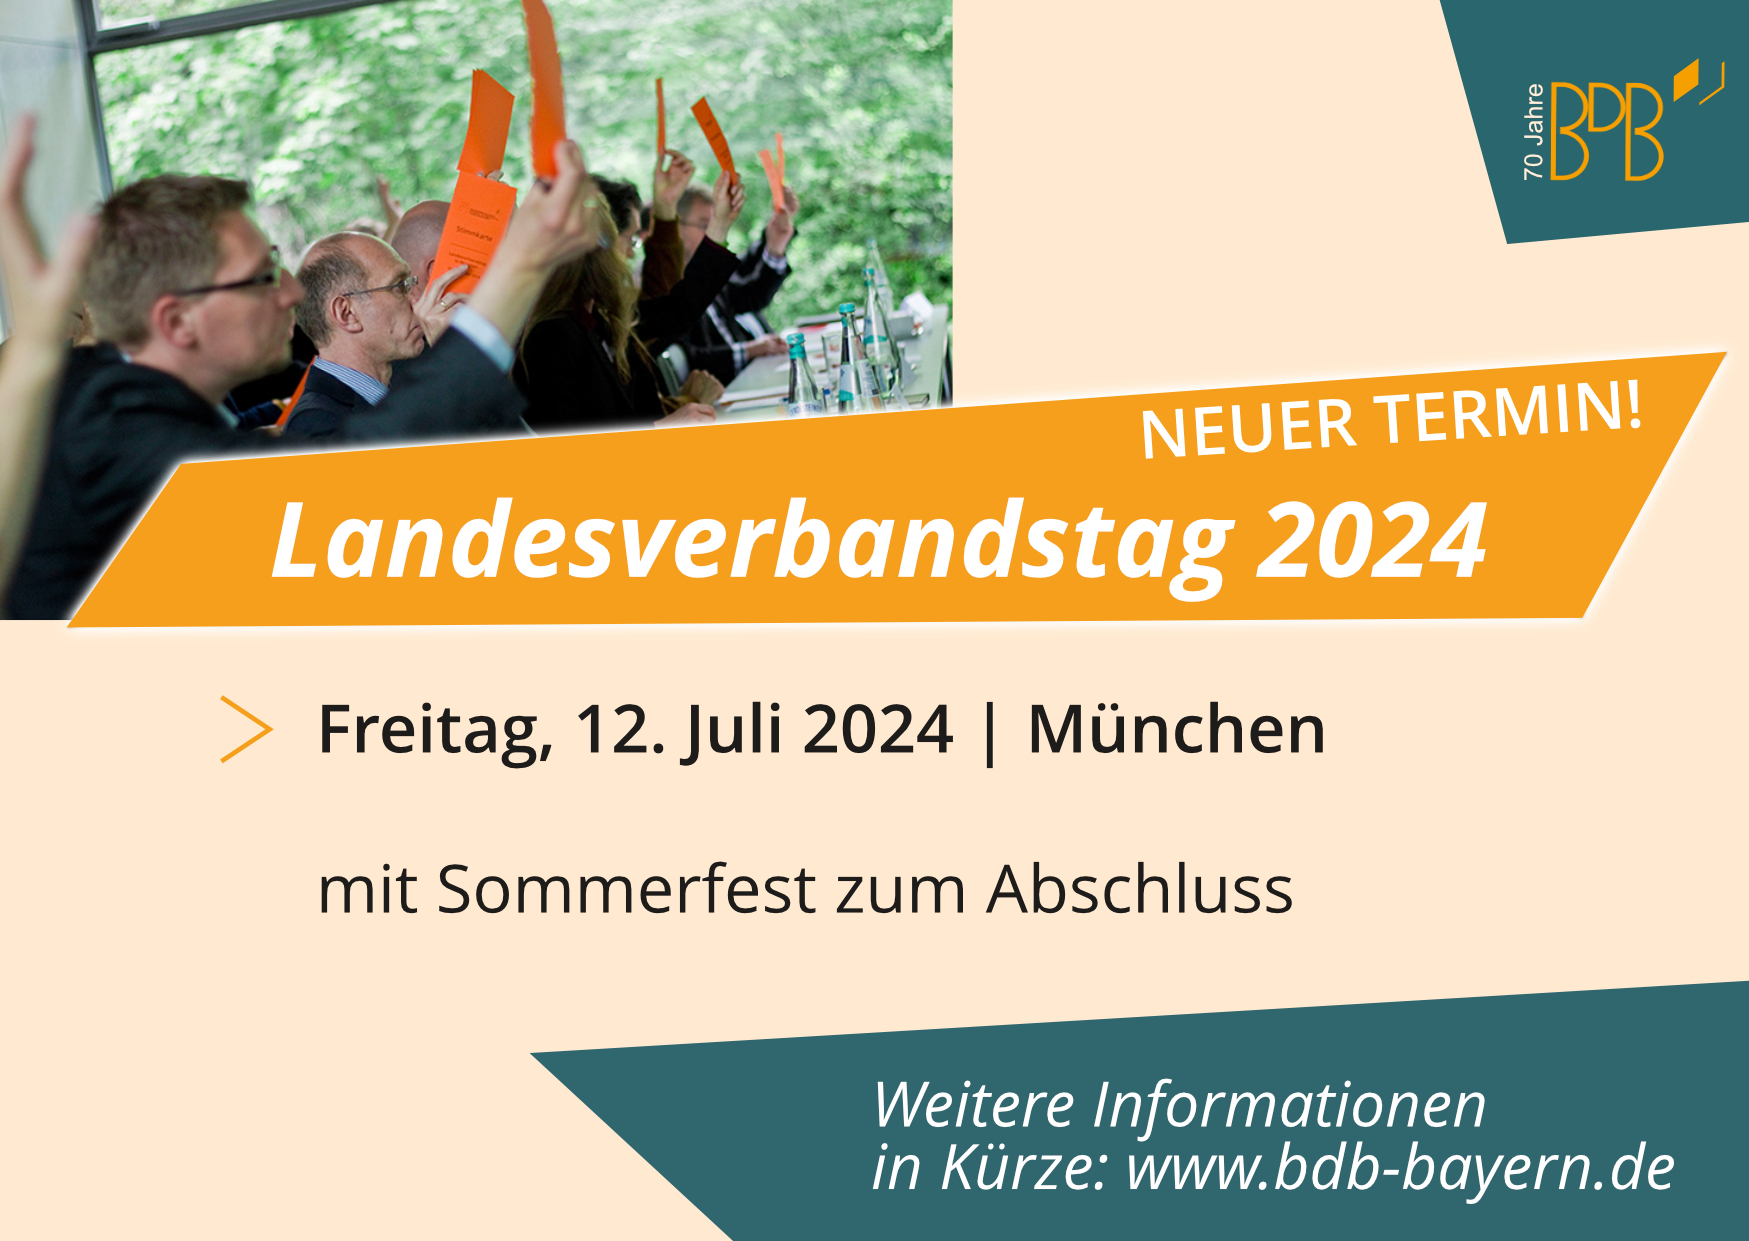 Neues Datum für den Landesverbandstag in München: 12.7.2024